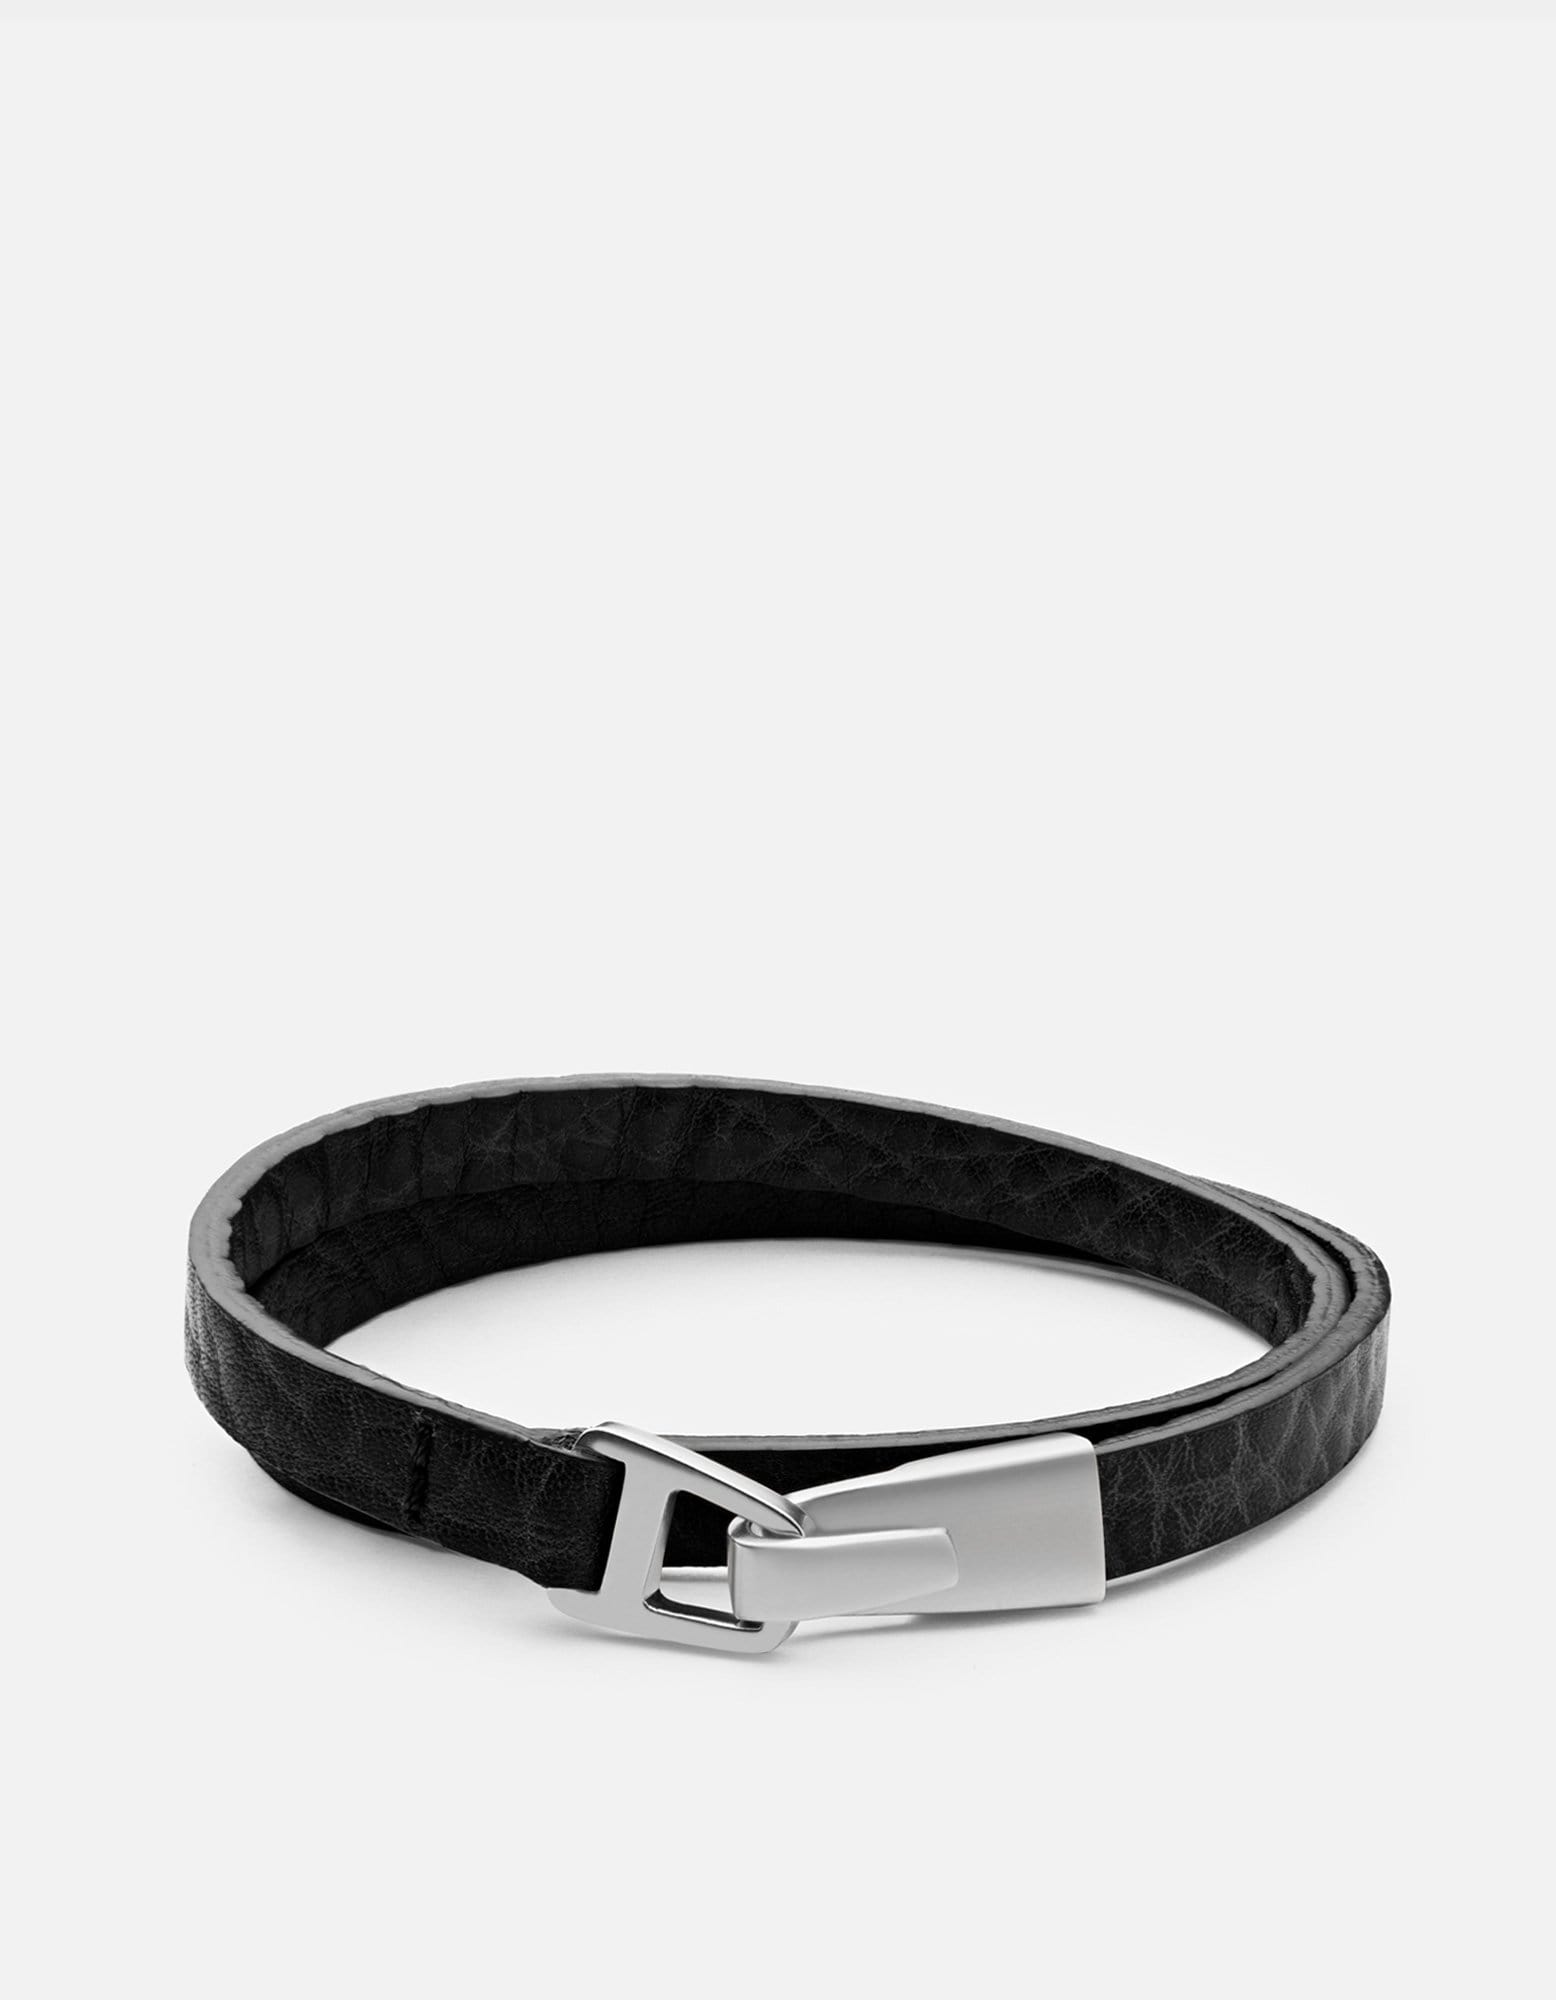 Moore Wrap Bracelet, Sterling Silver | Men's Bracelets | Miansai